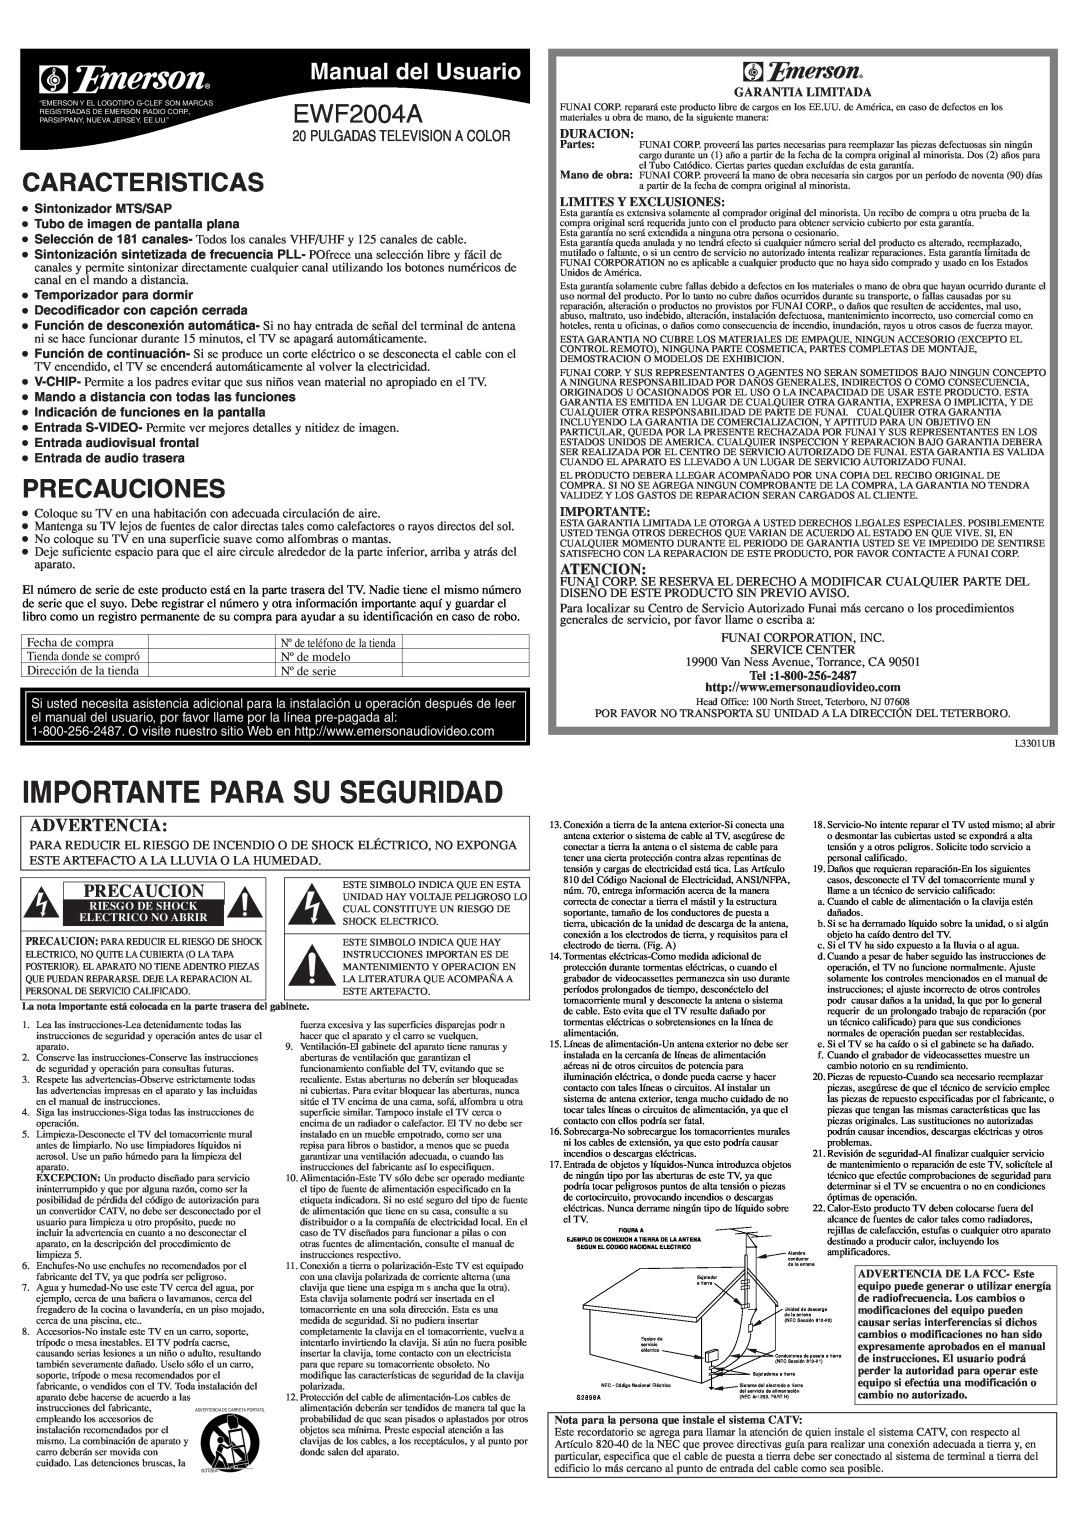 Emerson EWF2004A Caracteristicas, Precauciones, Manual del Usuario, Atencion, Garantia Limitada, Duracion, Importante 